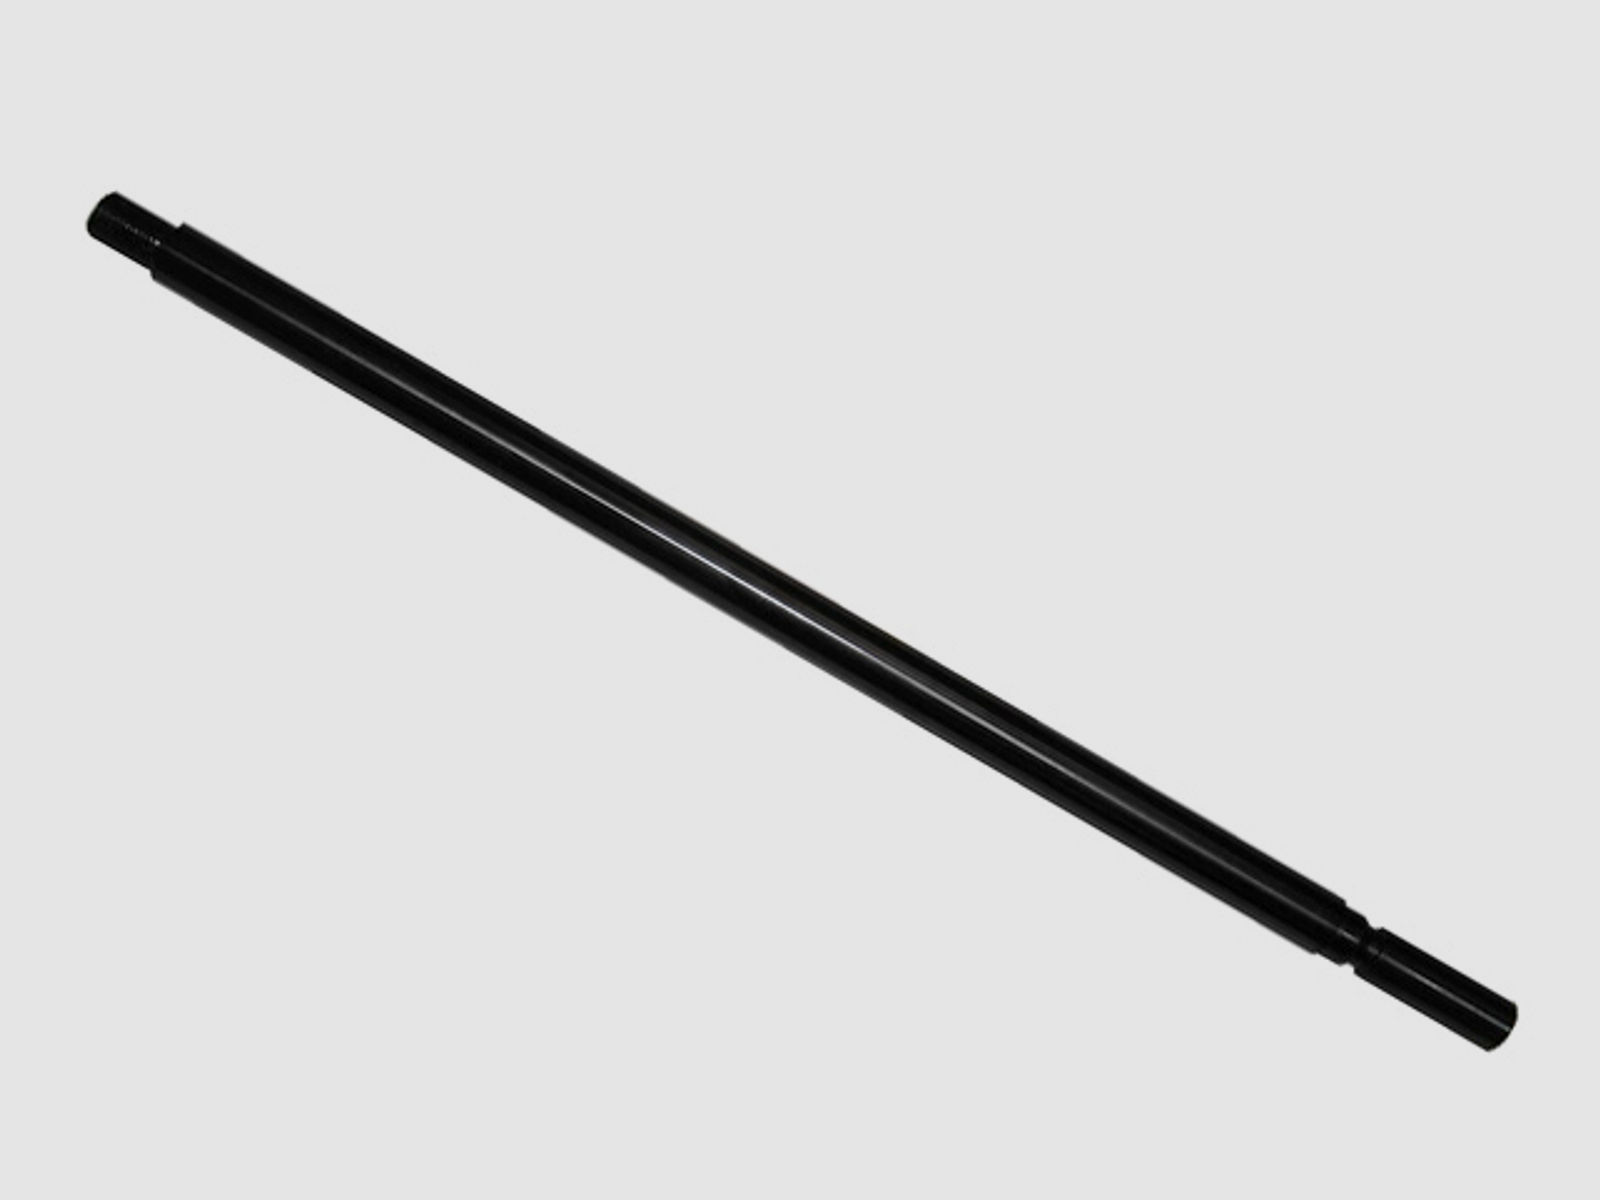 Wechsellauf mit SchalldĂ¤mpfergewinde (F) 41 cm Kal. 4,5mm fĂĽr Pressluftgewehr Weihrauch HW 100 (P18)